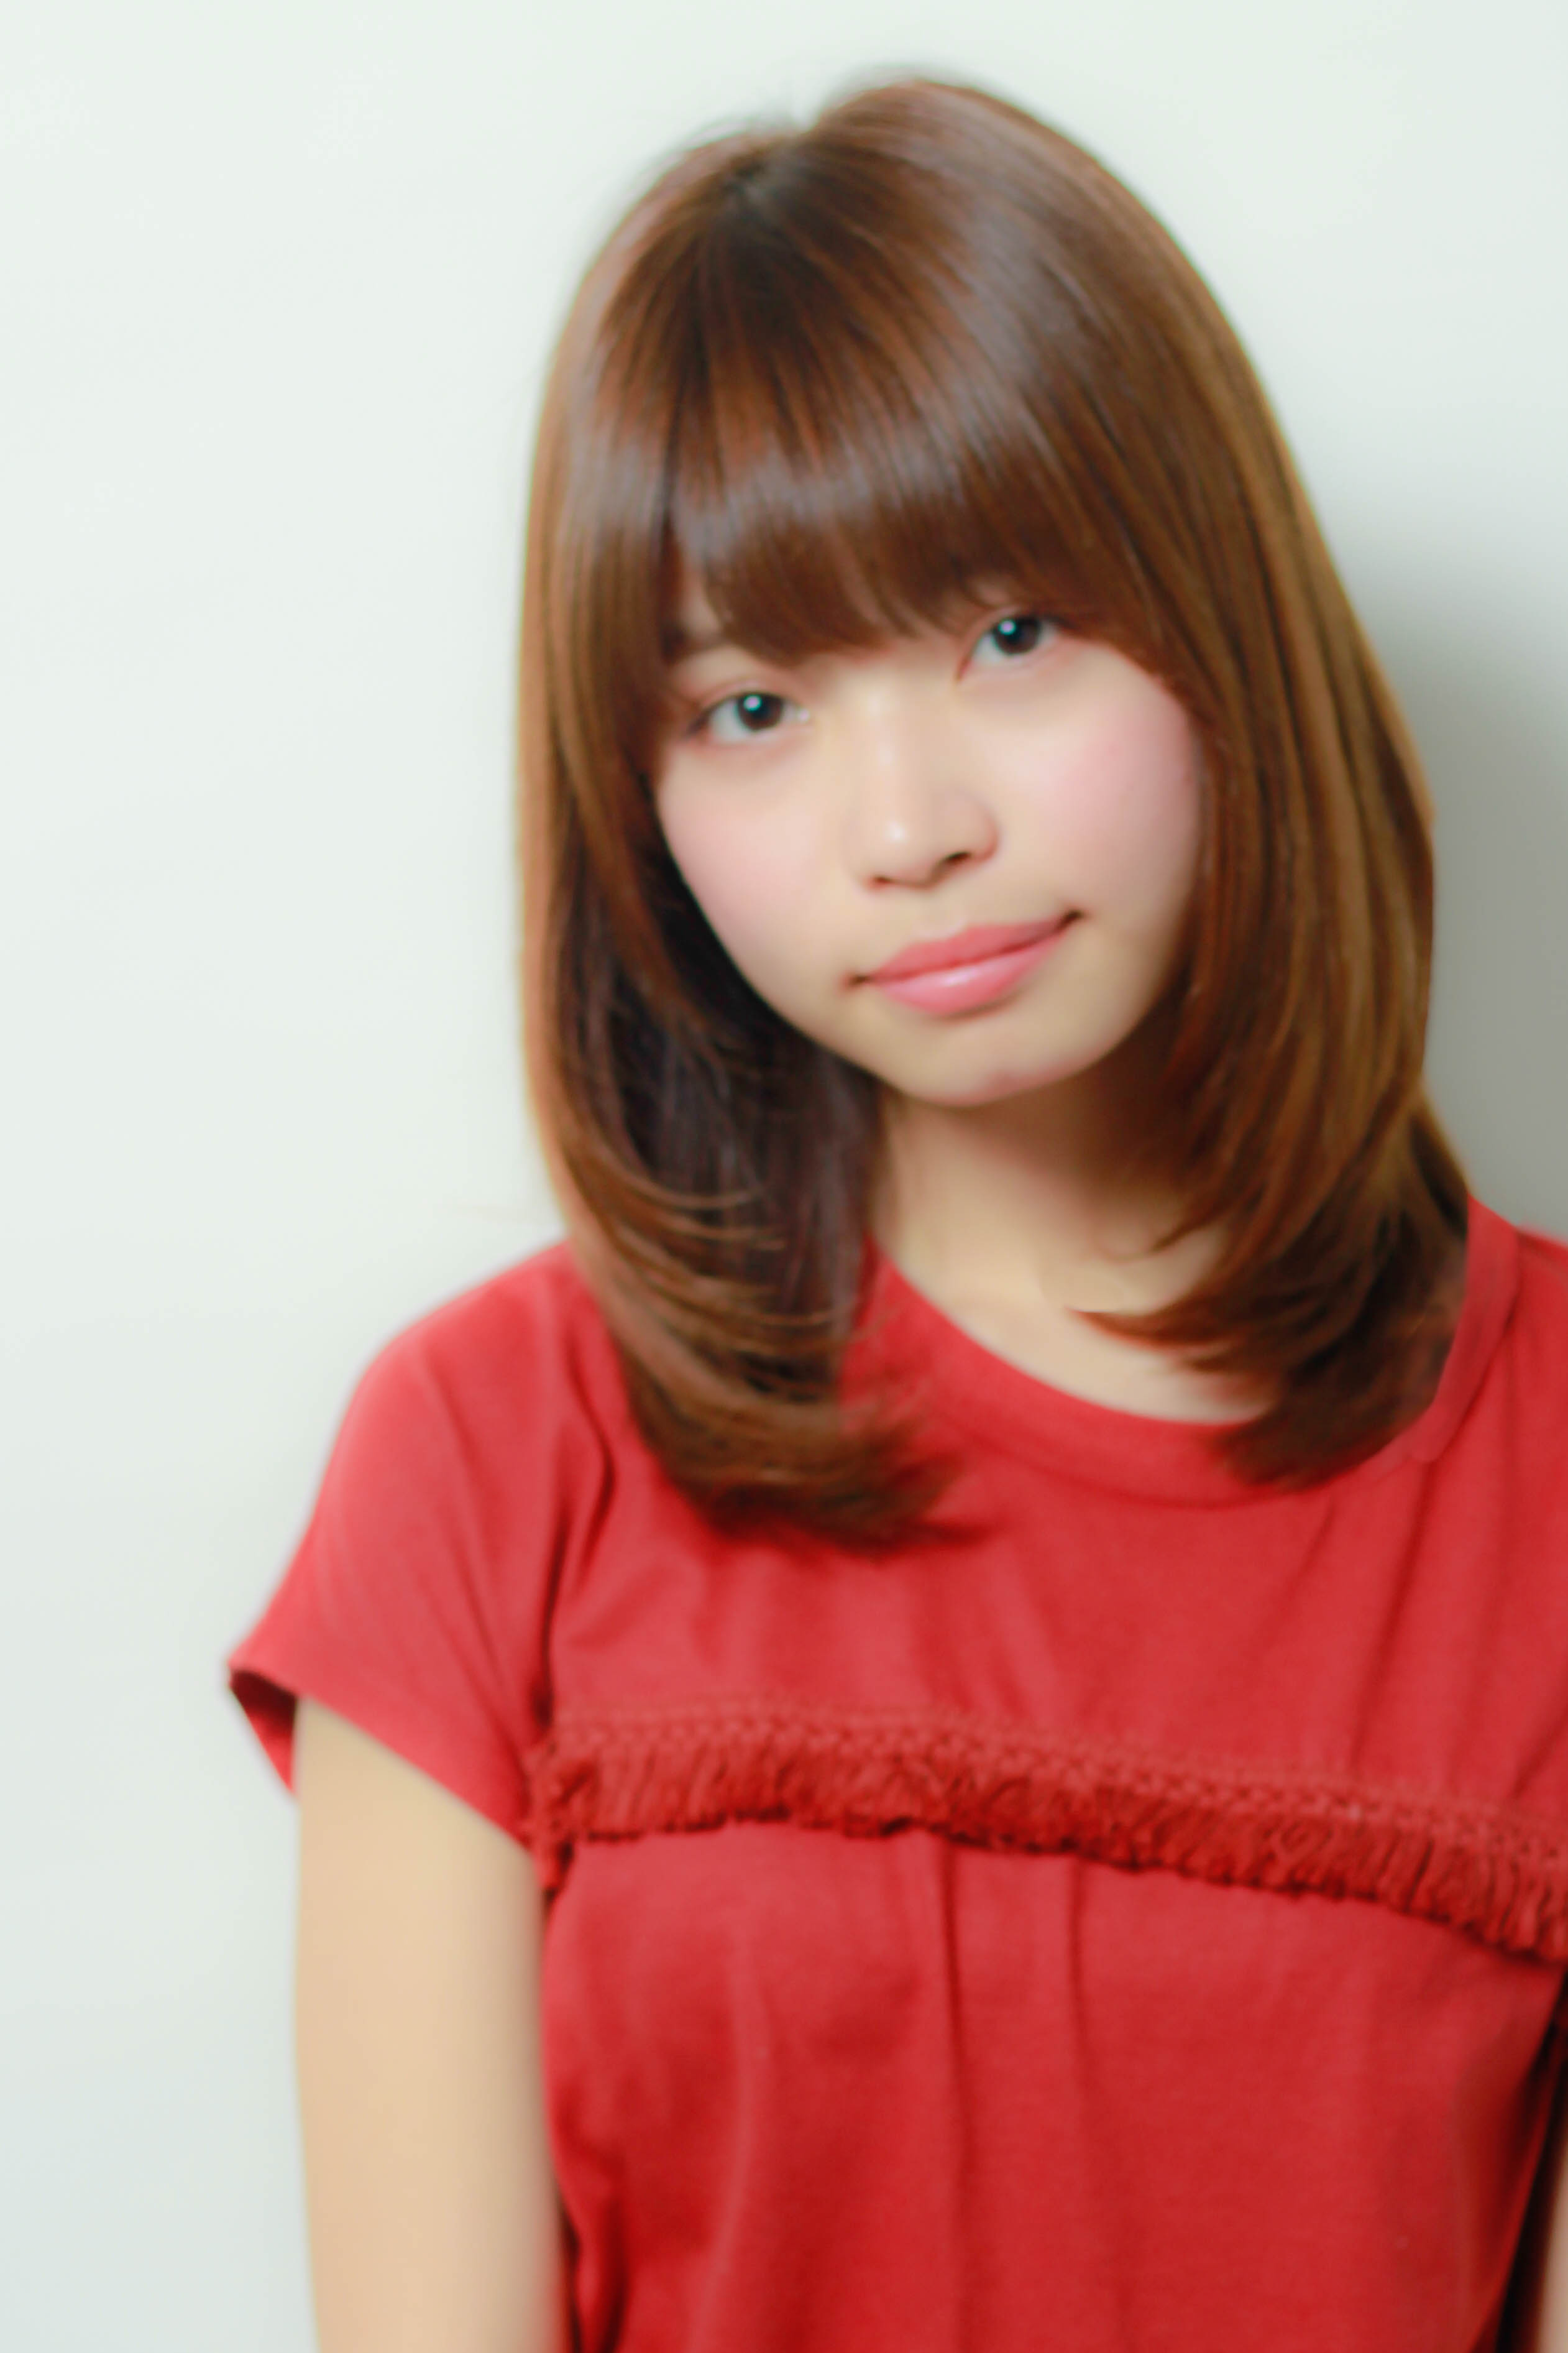 若く見える髪型とは マイナス５歳を叶える方法をプロの美容師が解説します 似合わせカットが上手い東京の美容師 美容室minx銀座 蛭田のブログ